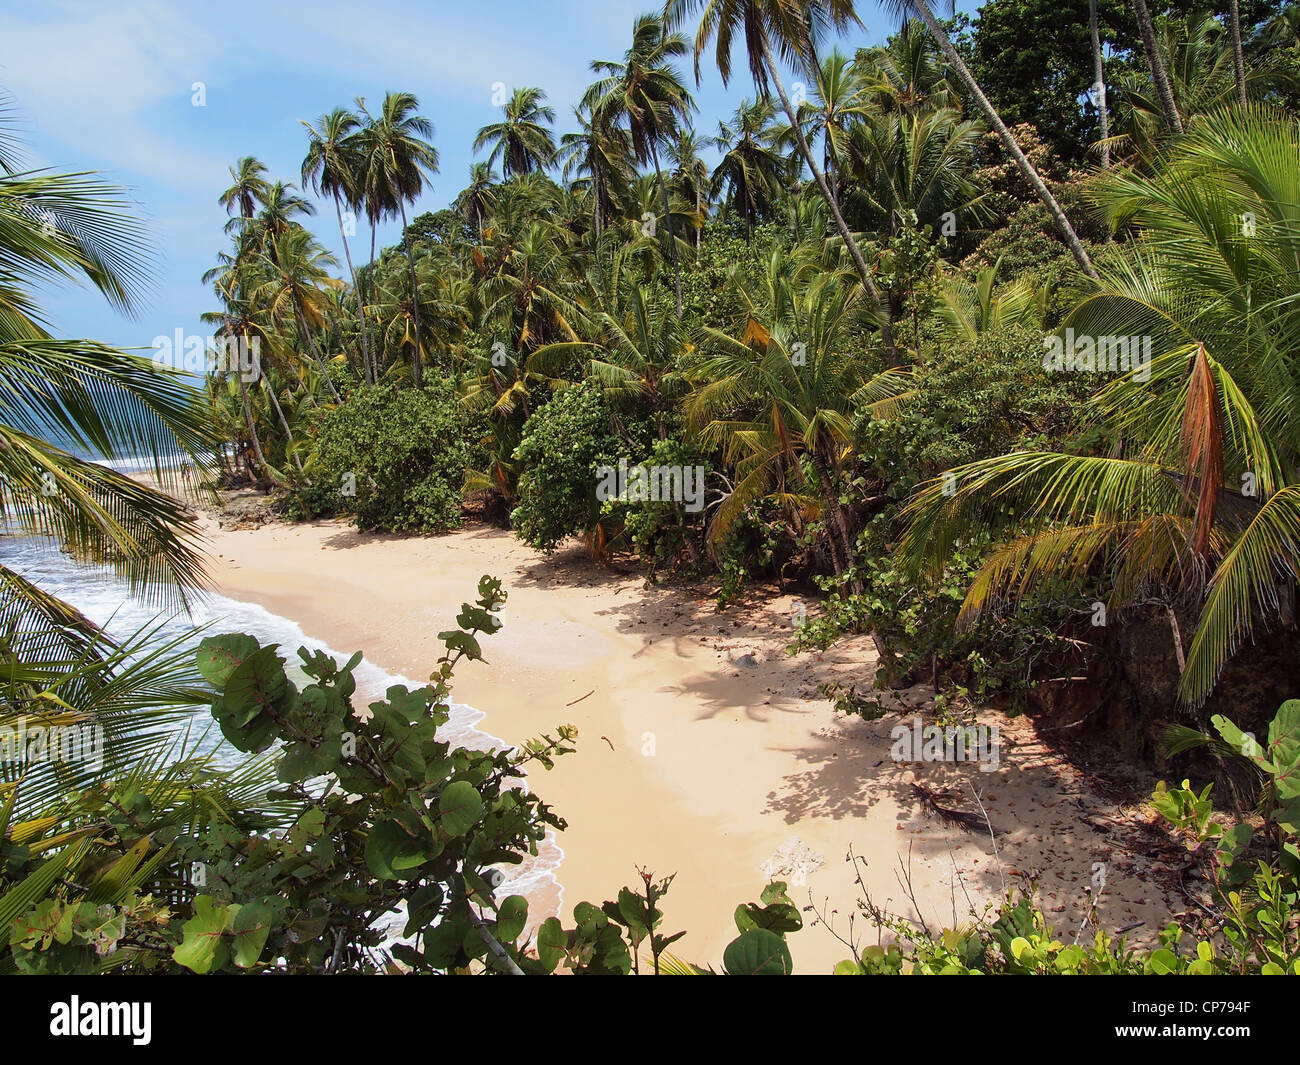 Una bellissima spiaggia di sabbia bianca con una lussureggiante vegetazione tropicale, costa caraibica del Costa Rica Foto Stock